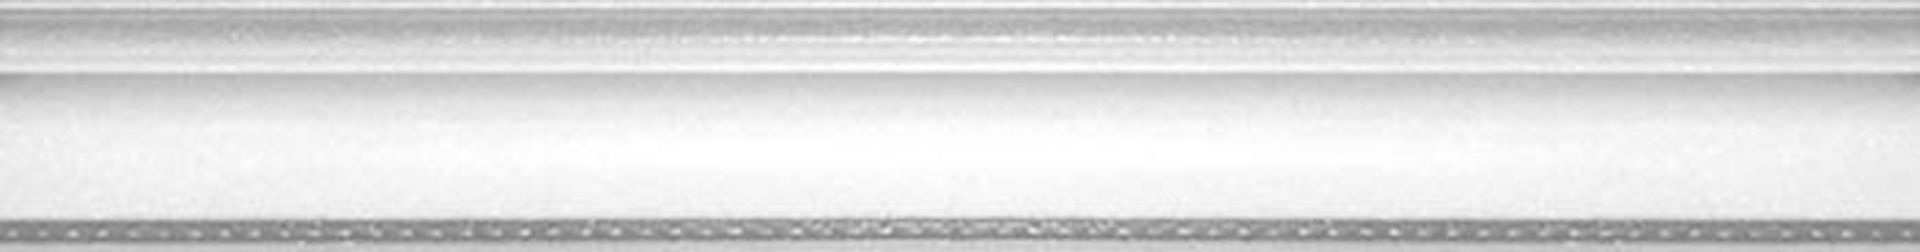 Керамическая плитка MOLD. LONDON K 4*30 / коллекция BUXY-MODUS-LONDON / производитель Dualgres / страна Испания